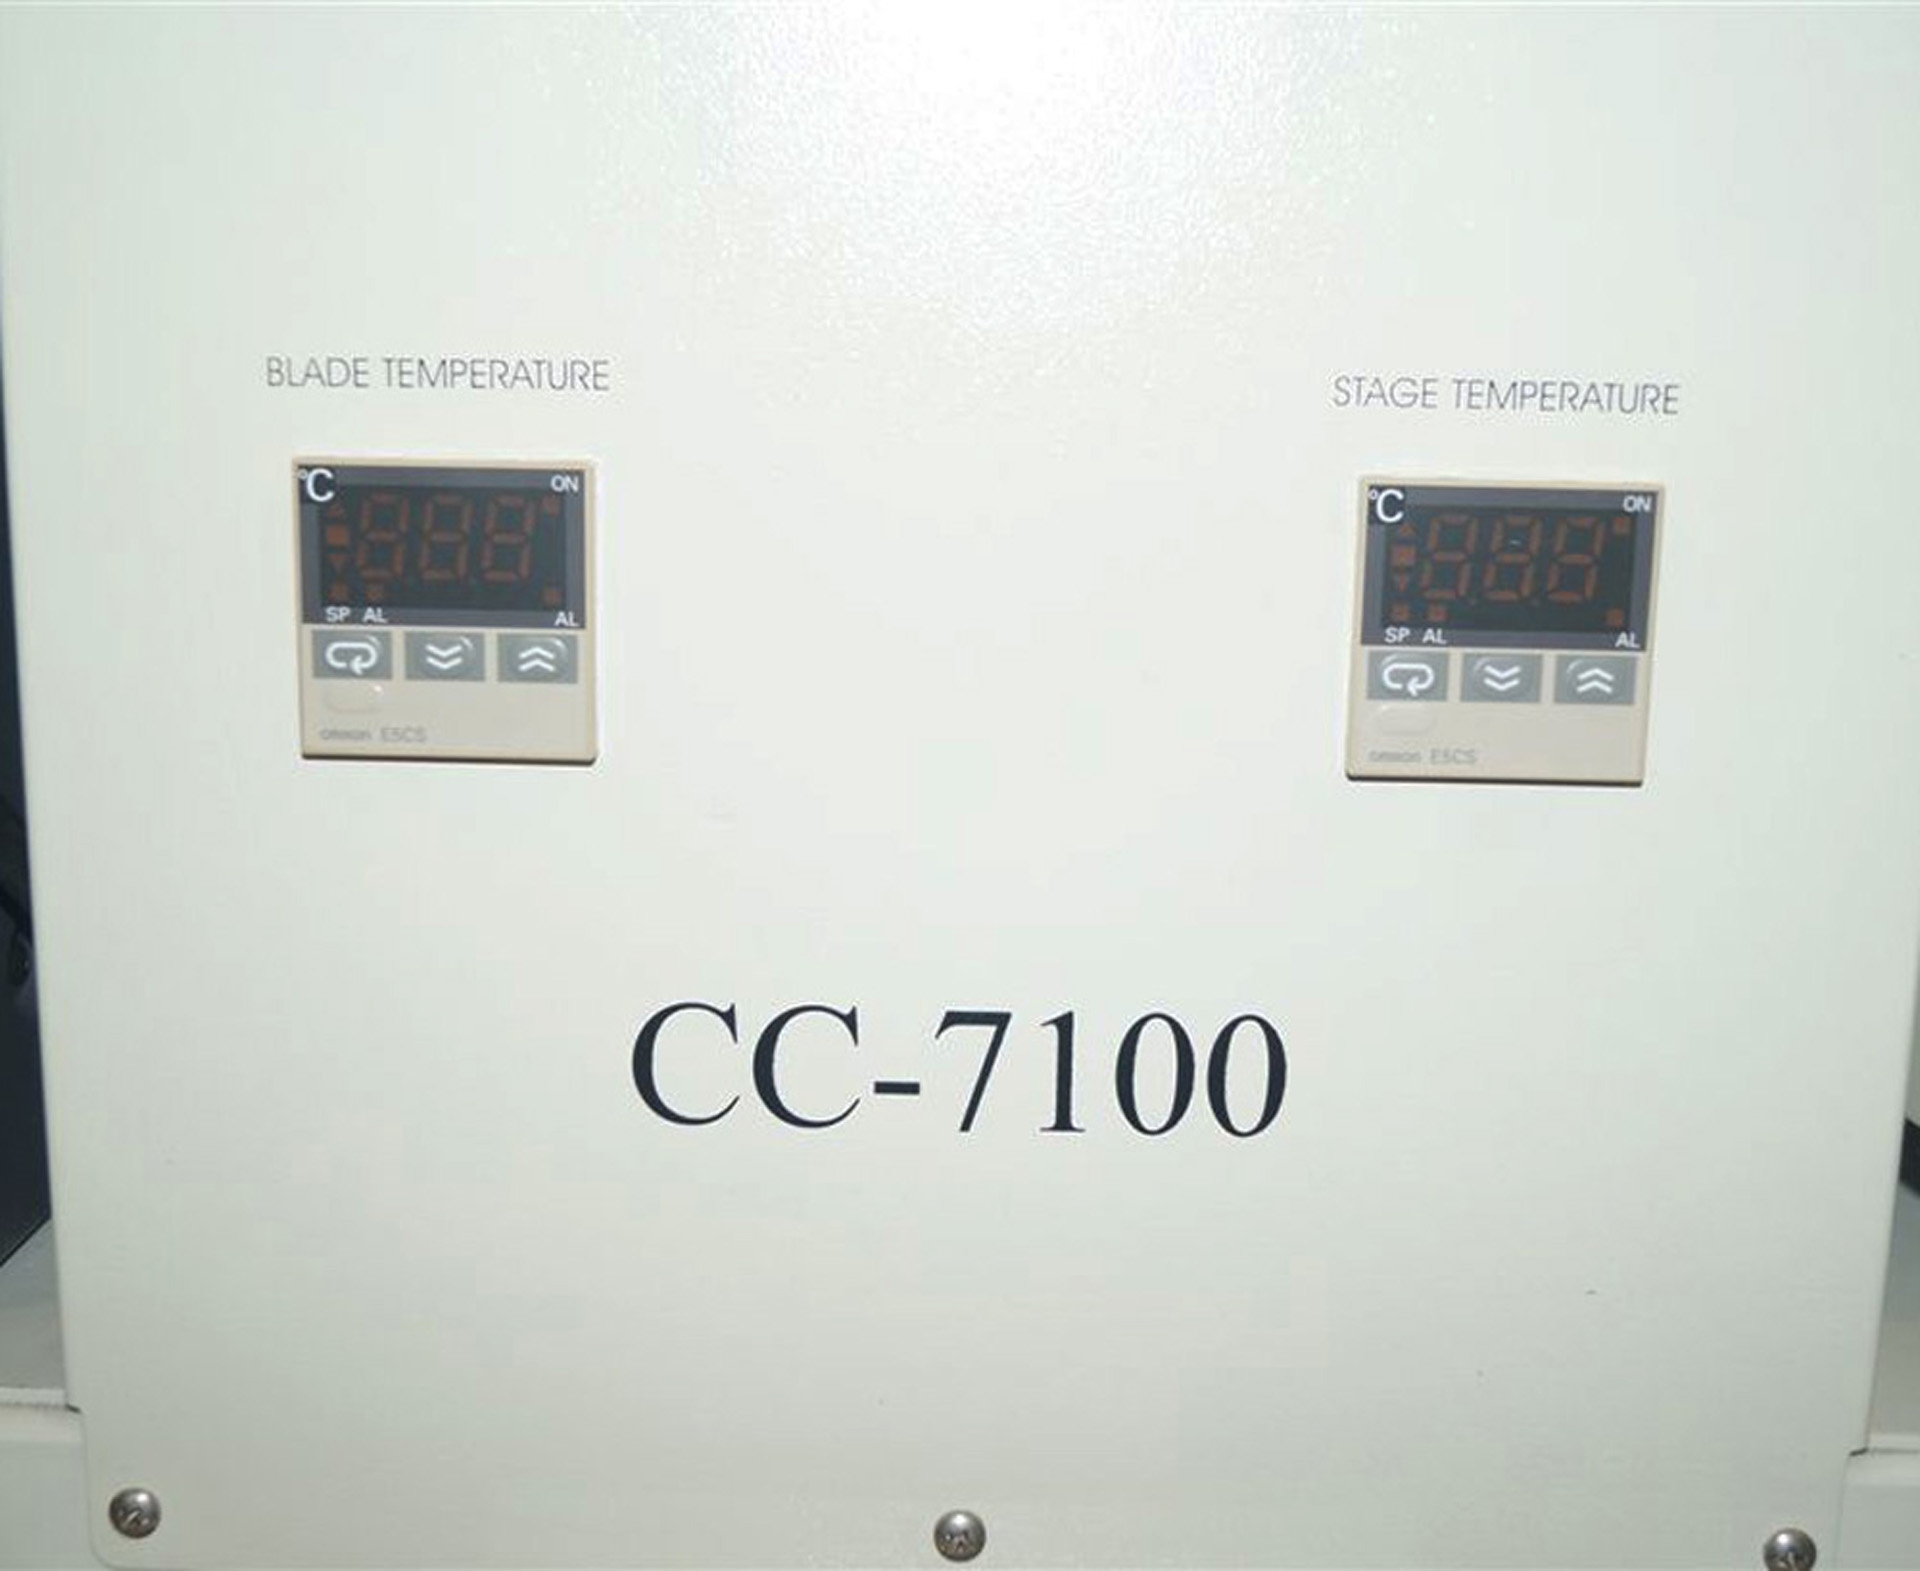 フォト（写真） 使用される PTC / PACIFIC TRINETICS CORP CC-7100 販売のために